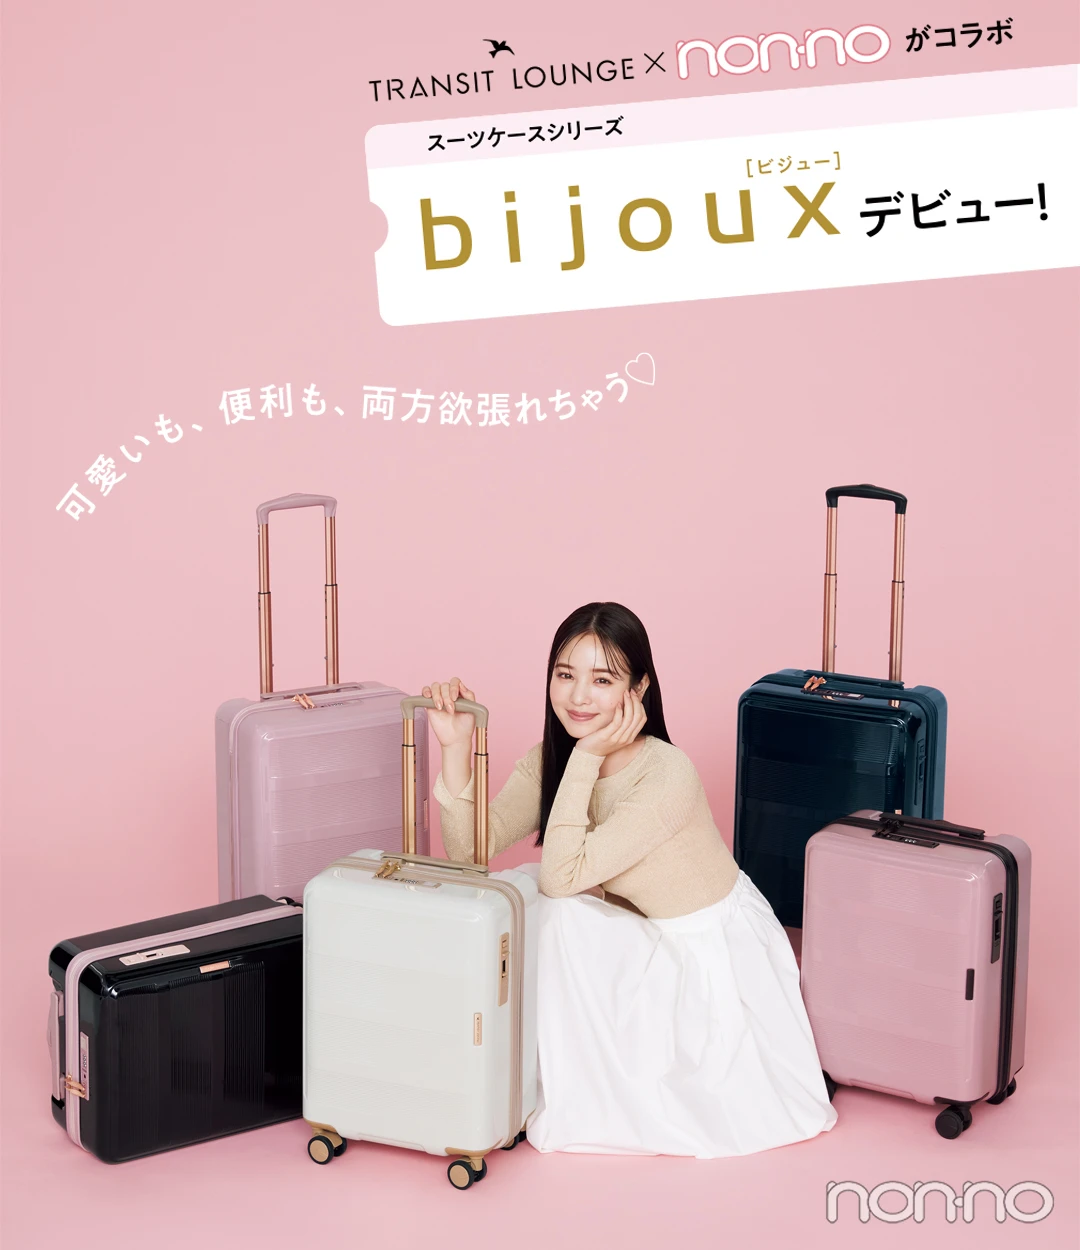 可愛いも、便利も、両方欲張れちゃう♡　スーツケーススーツケースシリーズ  ［ビジュー］  デビュー！